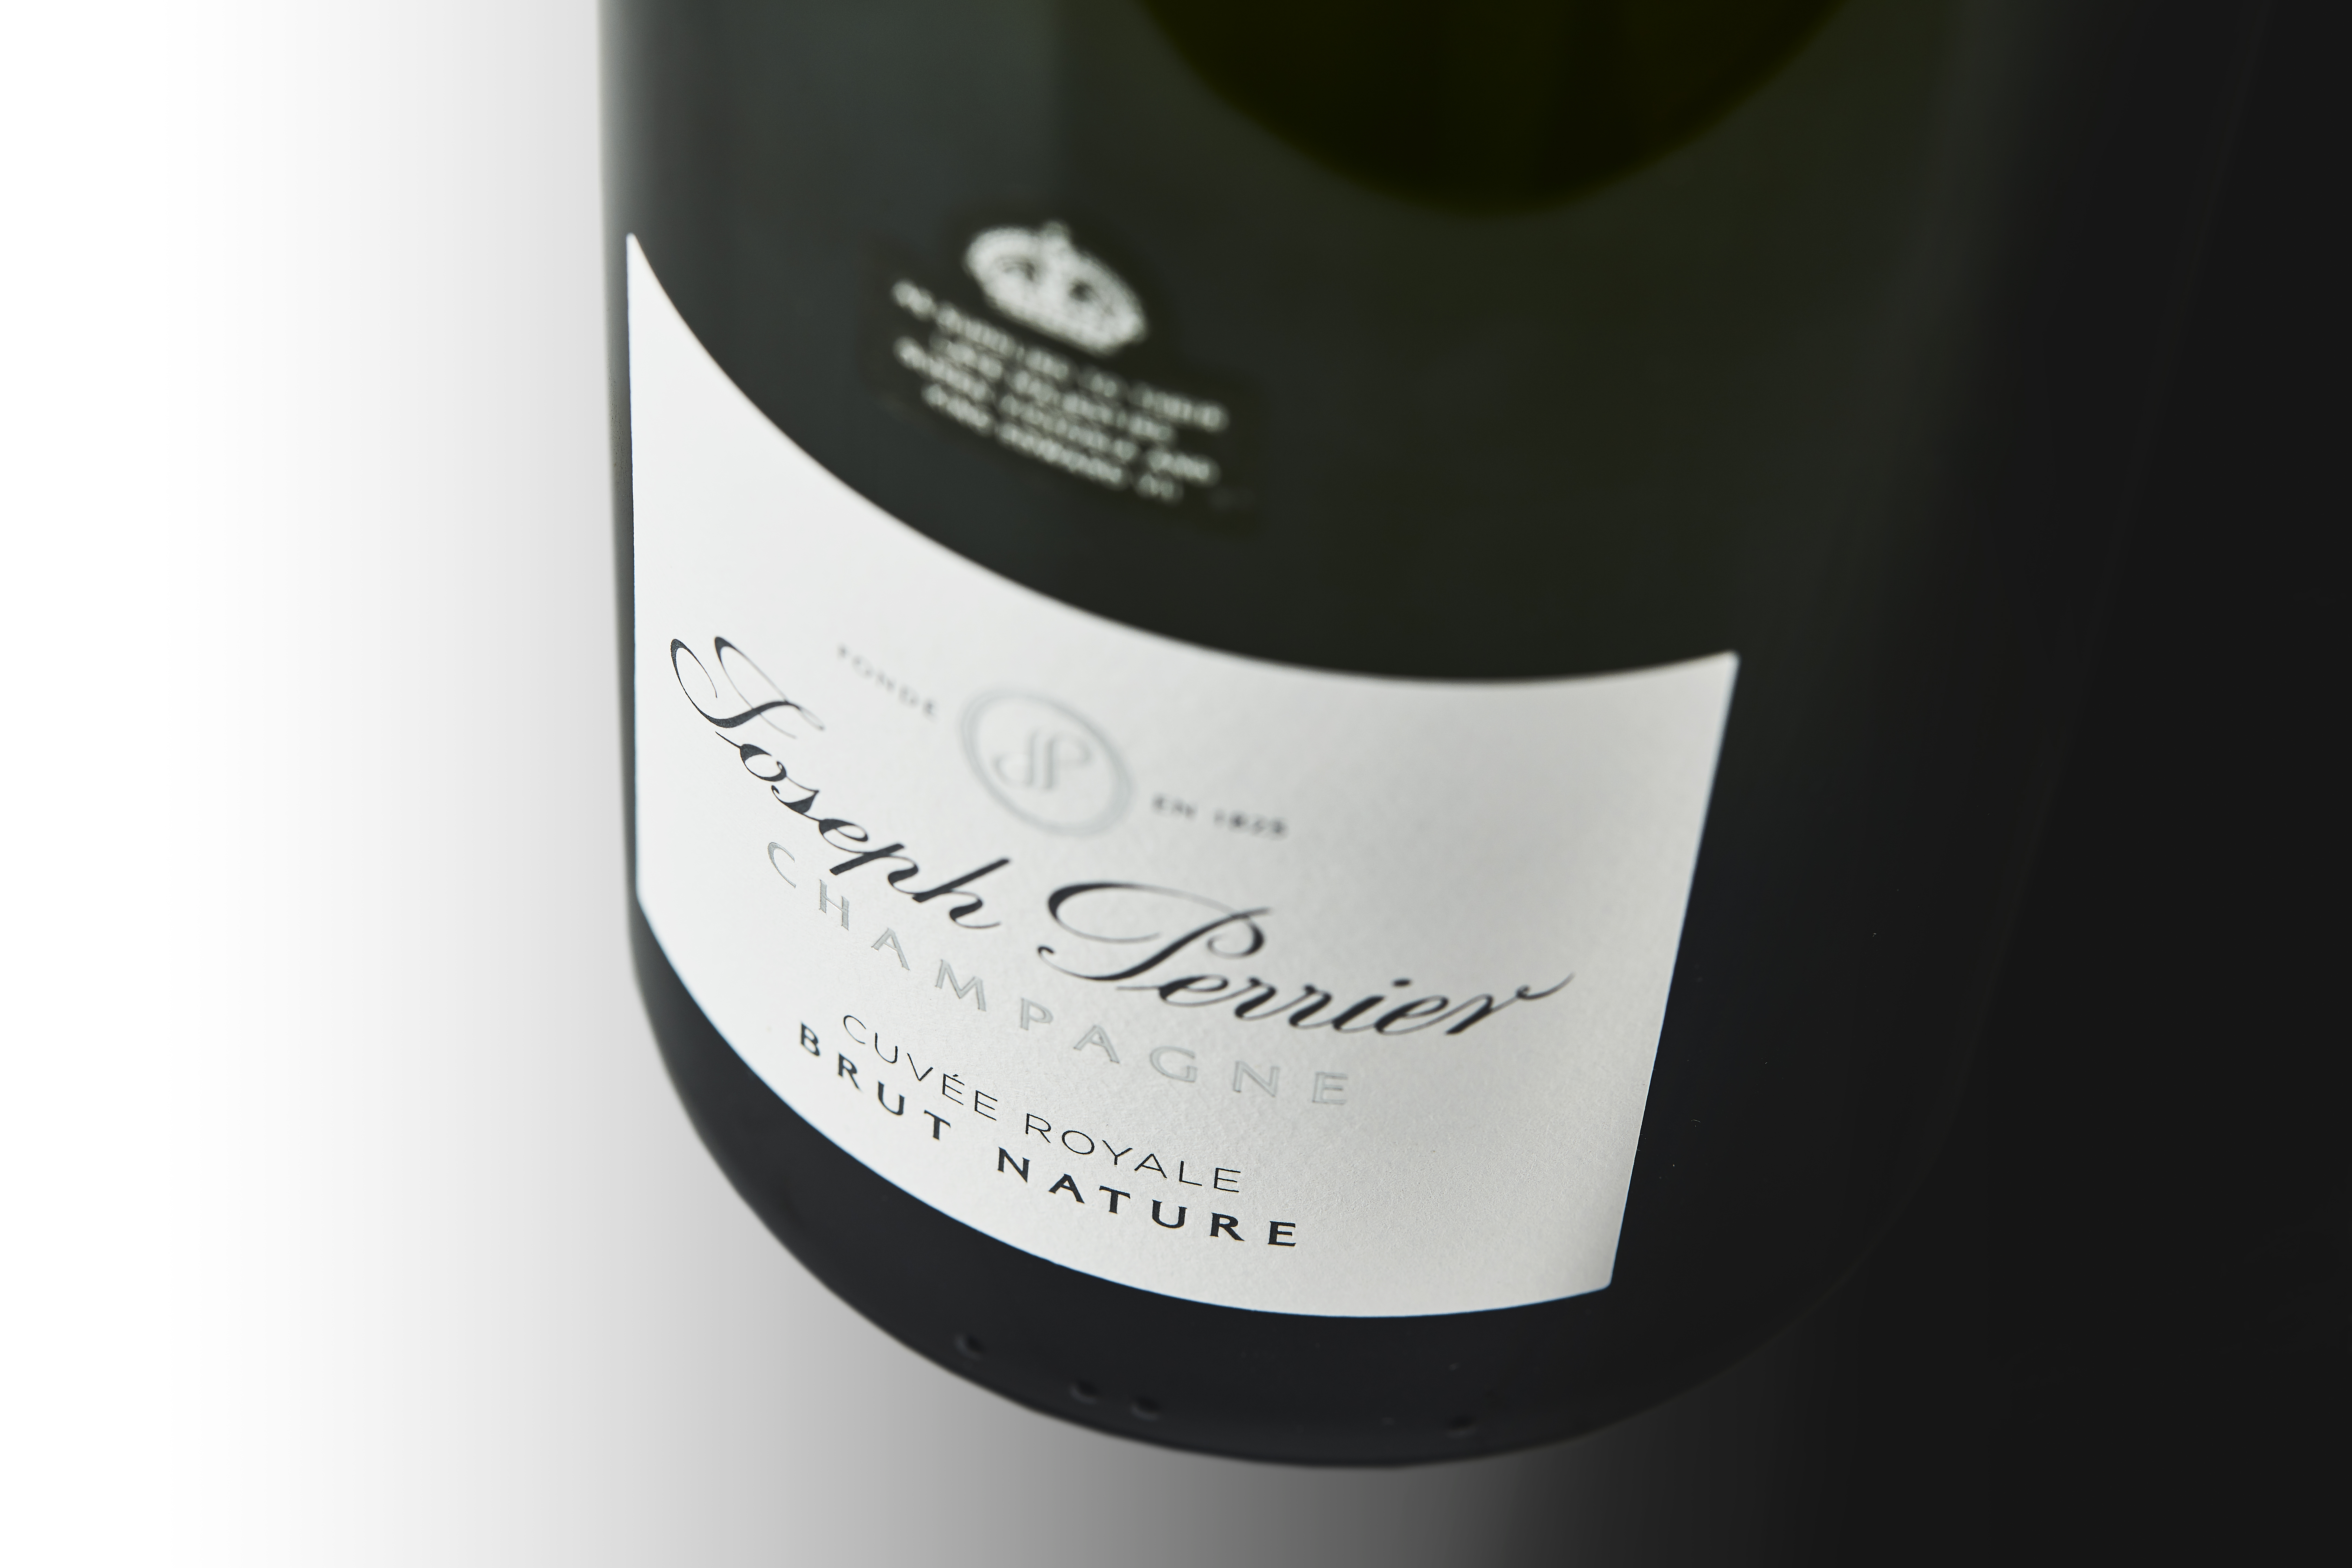 Champagne Joseph Perrier - Cuvée Royale Brut Nature